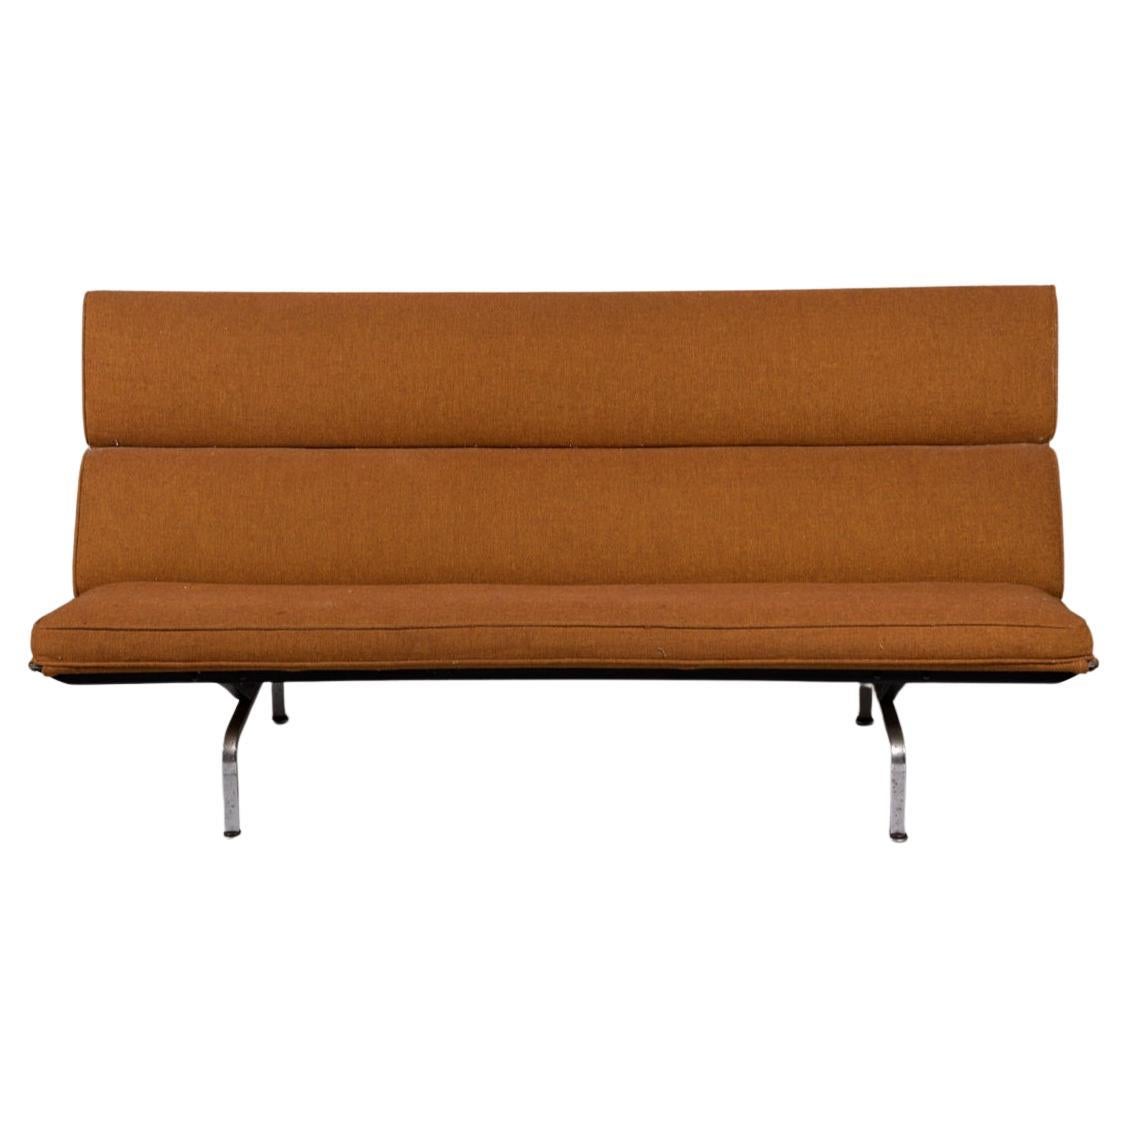 Original kompaktes Original-Sofa aus der Mitte des Jahrhunderts von Ray und Charles Eames für Herman Miller